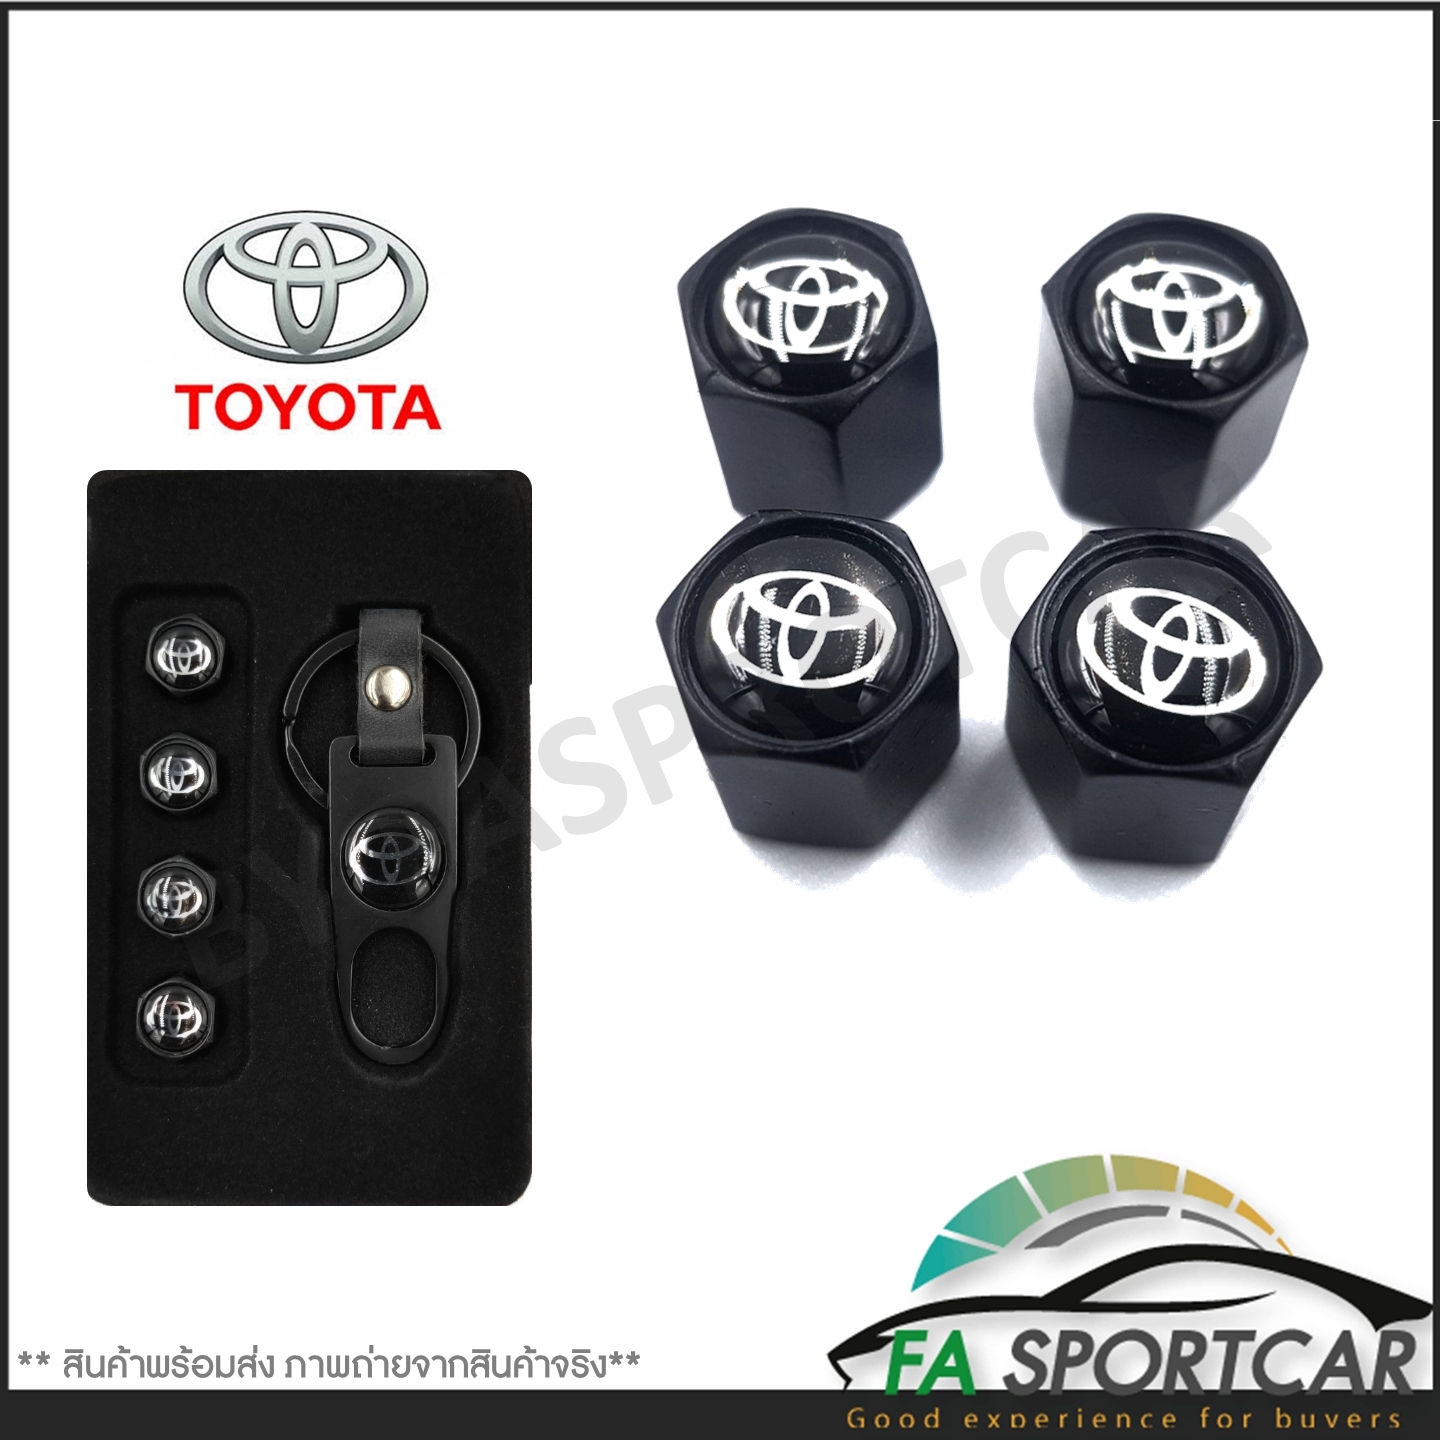 [รับประกันสินค้า] จุกลมยางรถยนต์ พร้อมโลโก้ จุกปิดลมยางพร้อมประแจ ฝาปิดจุกลม ยางรถยนต์ Toyota 1 ชุด (4 อัน) - Car Tire Valve Caps